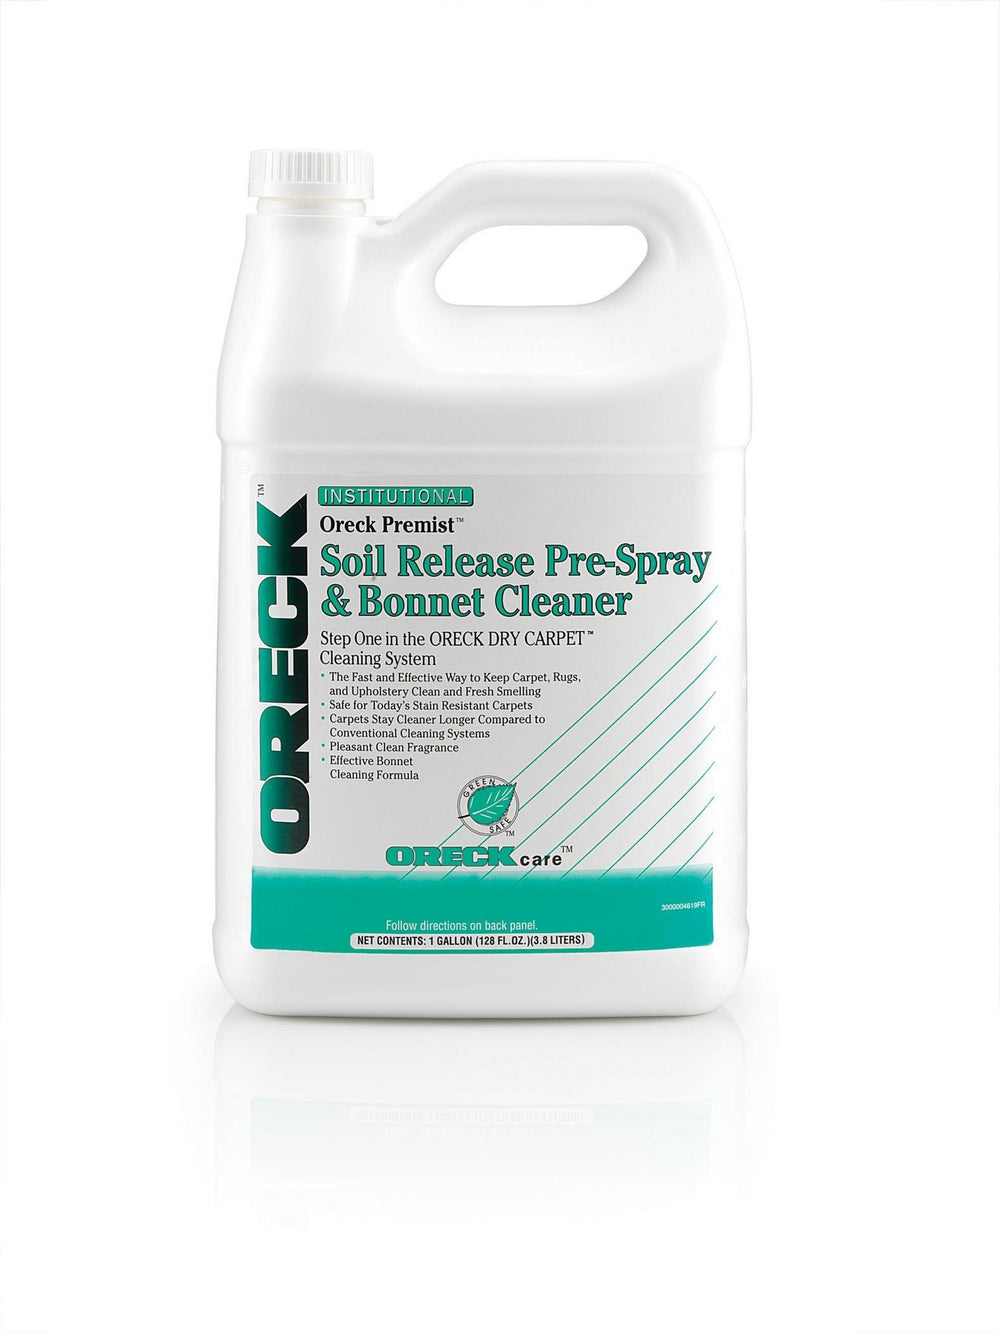 Premist Soil Release Pre-Spray (128 fl oz)1